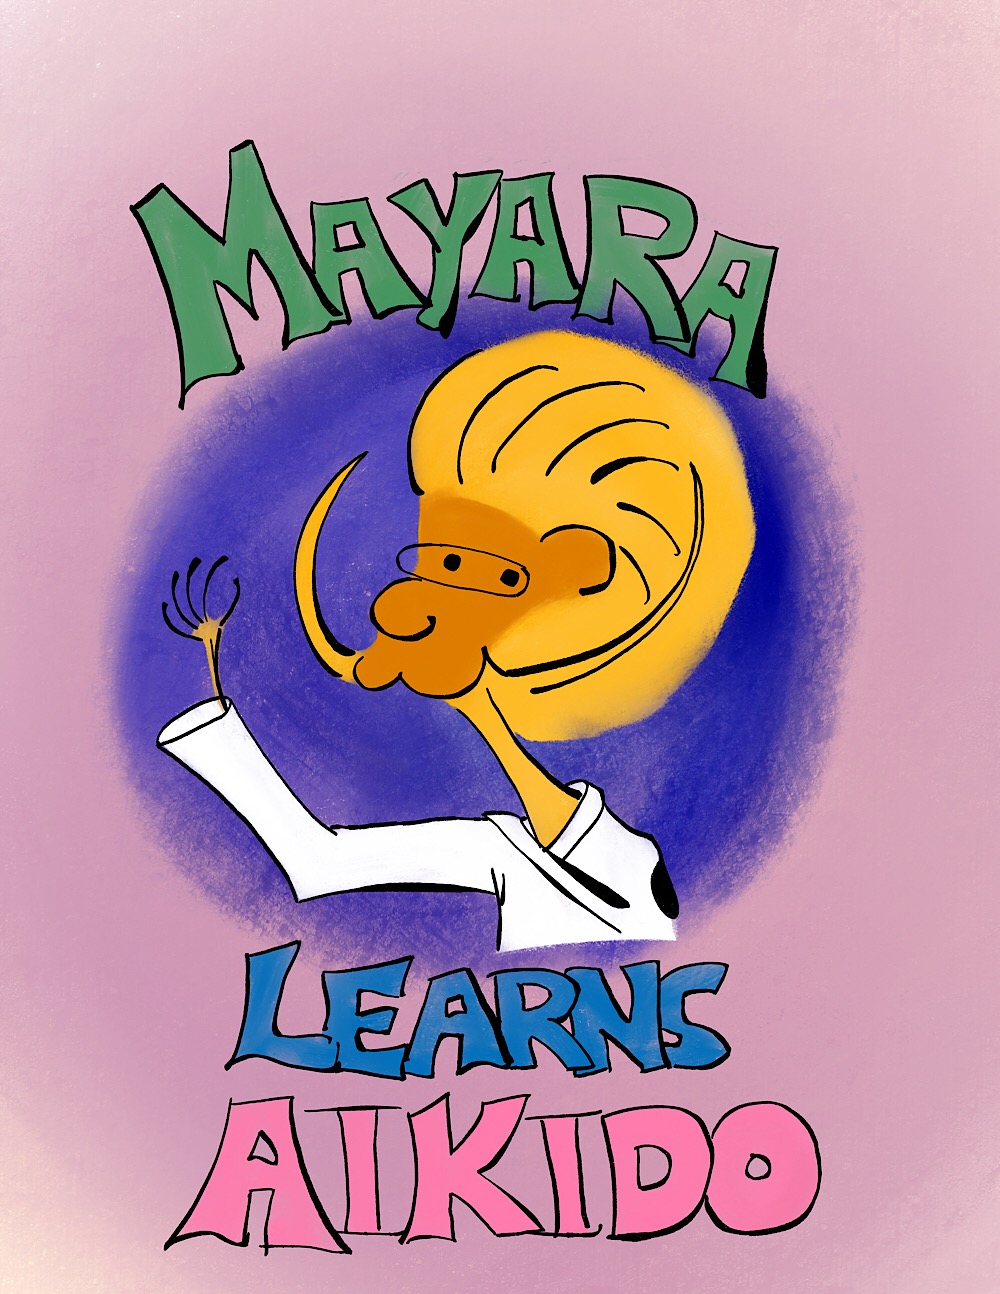 599: Mayara Learns Aikido